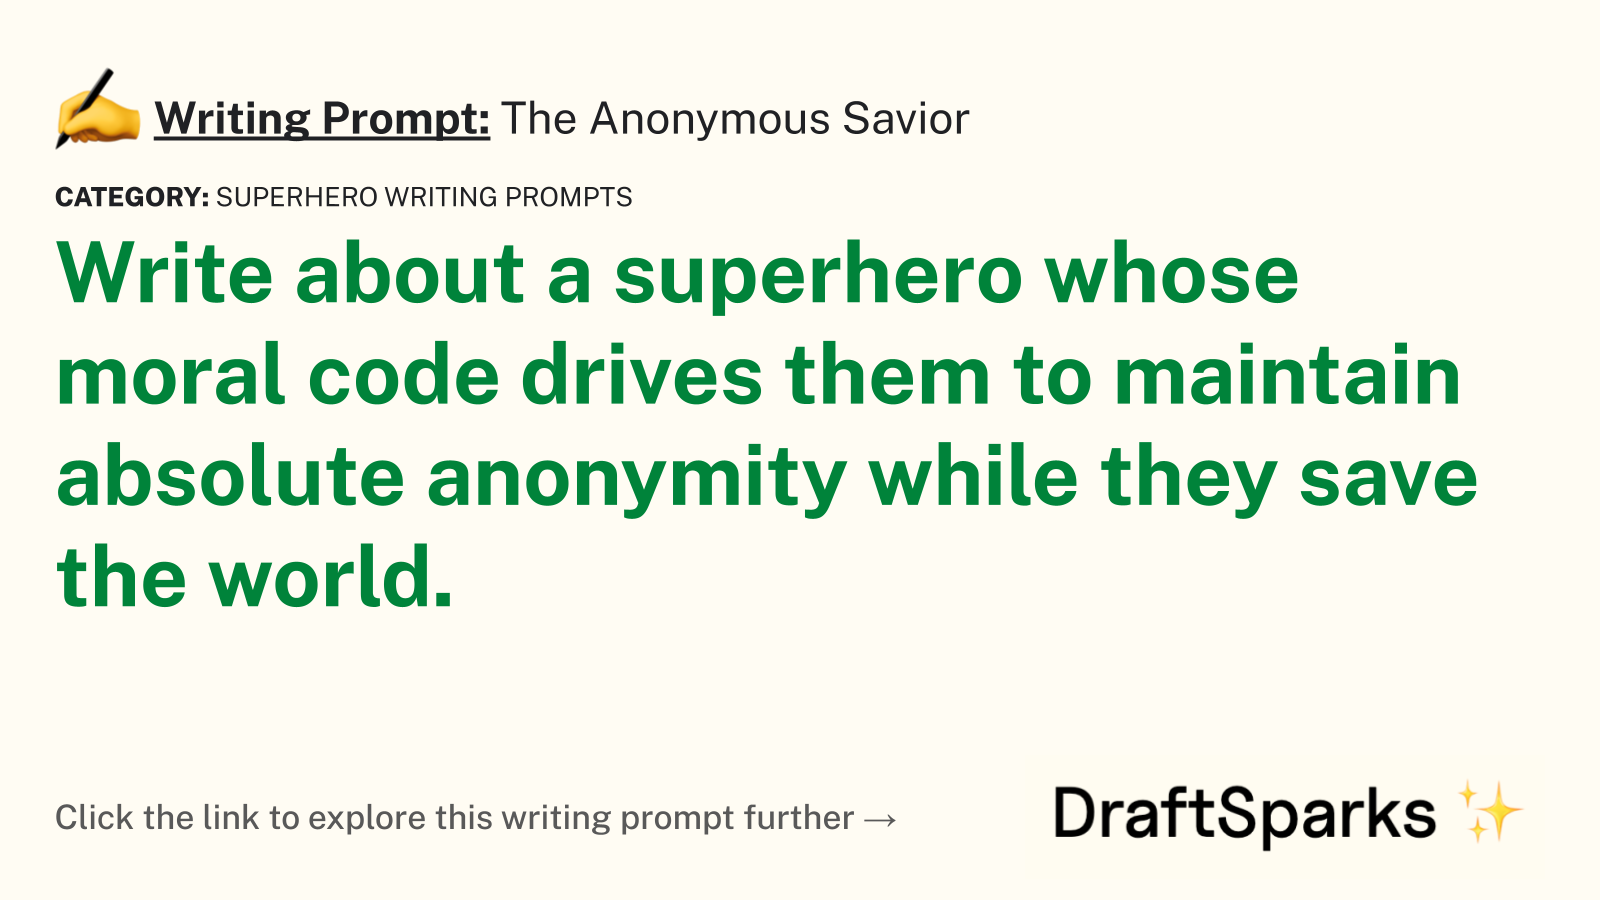 The Anonymous Savior